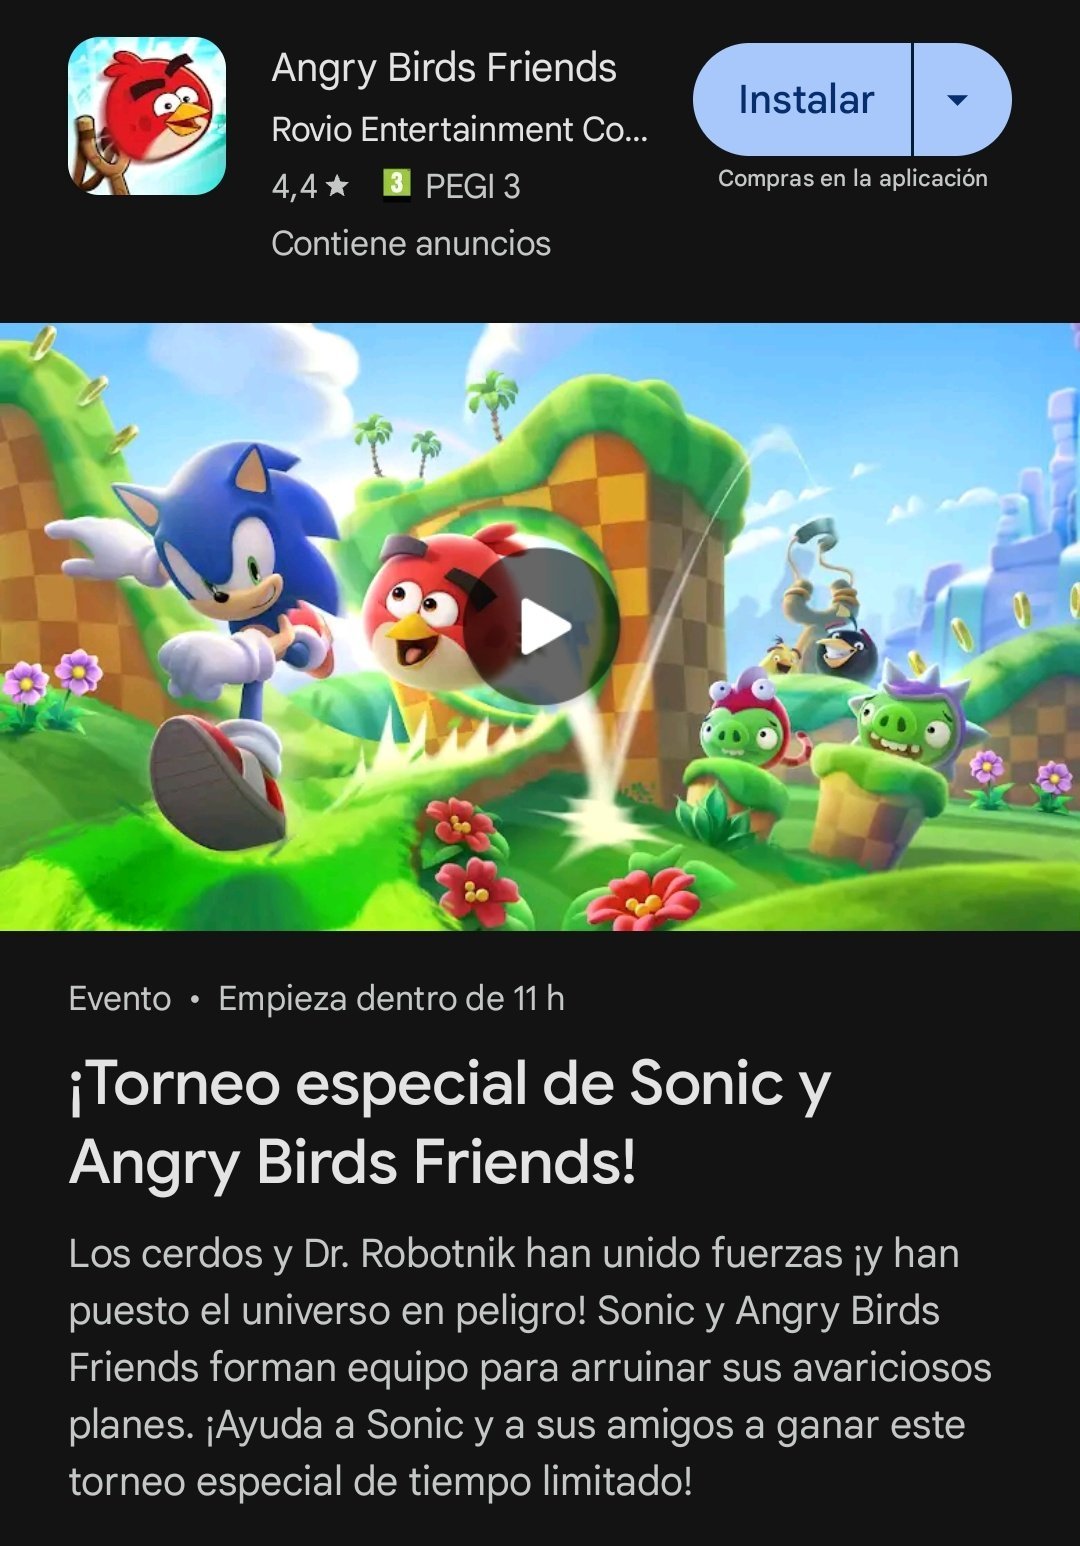 Sonic The Hedgehog x Angry Birds anuncian colaboración,¿Nuevo juego en camino? 18